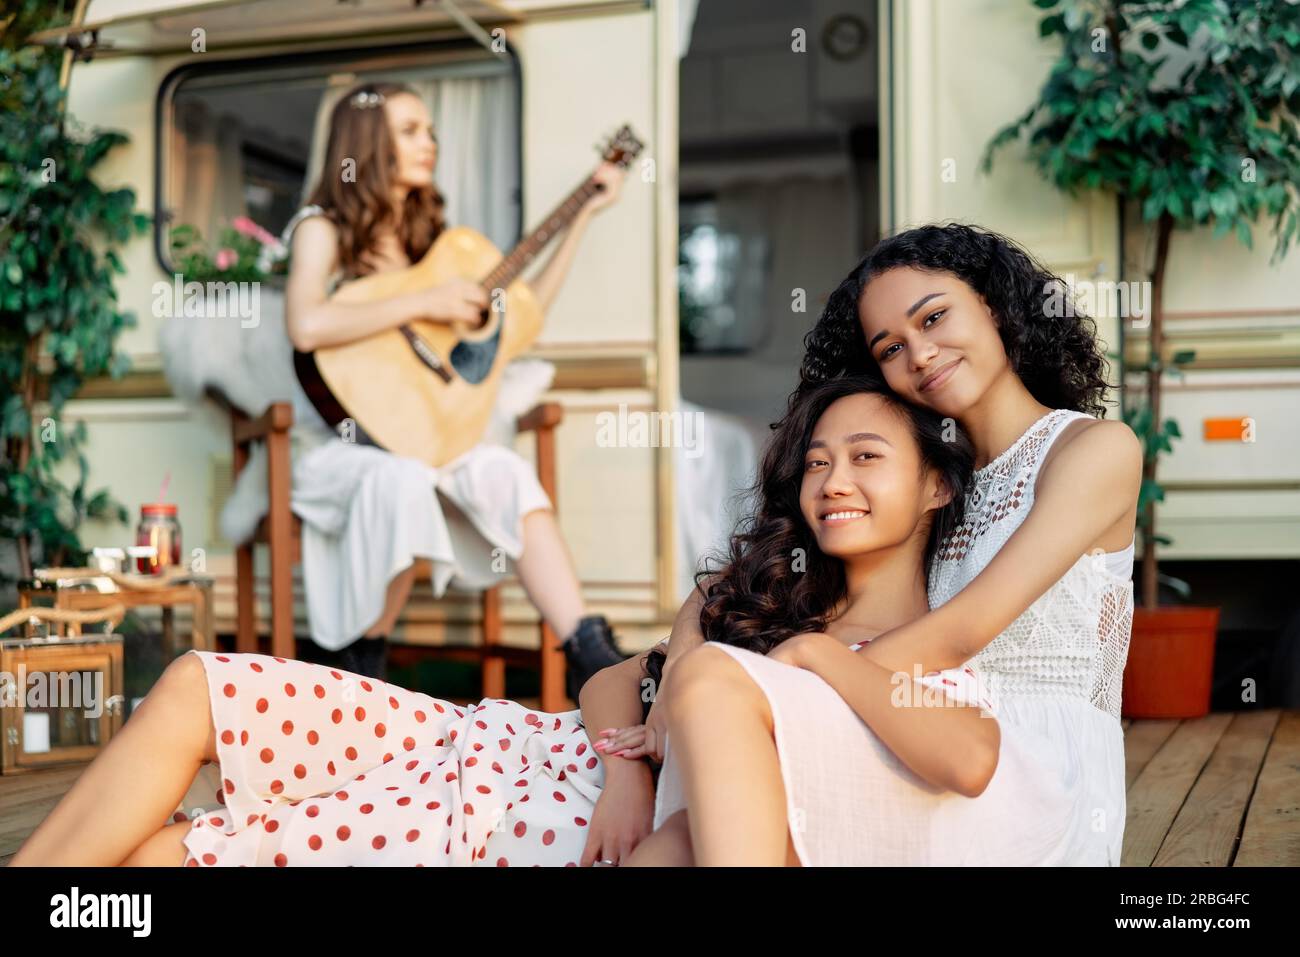 Junge glückliche Frauen entspannen sich und haben Spaß im Sommerurlaub. Asiatische und afroamerikanische Frau, die sich umarmt. Frauenfreundschaftskonzept Stockfoto